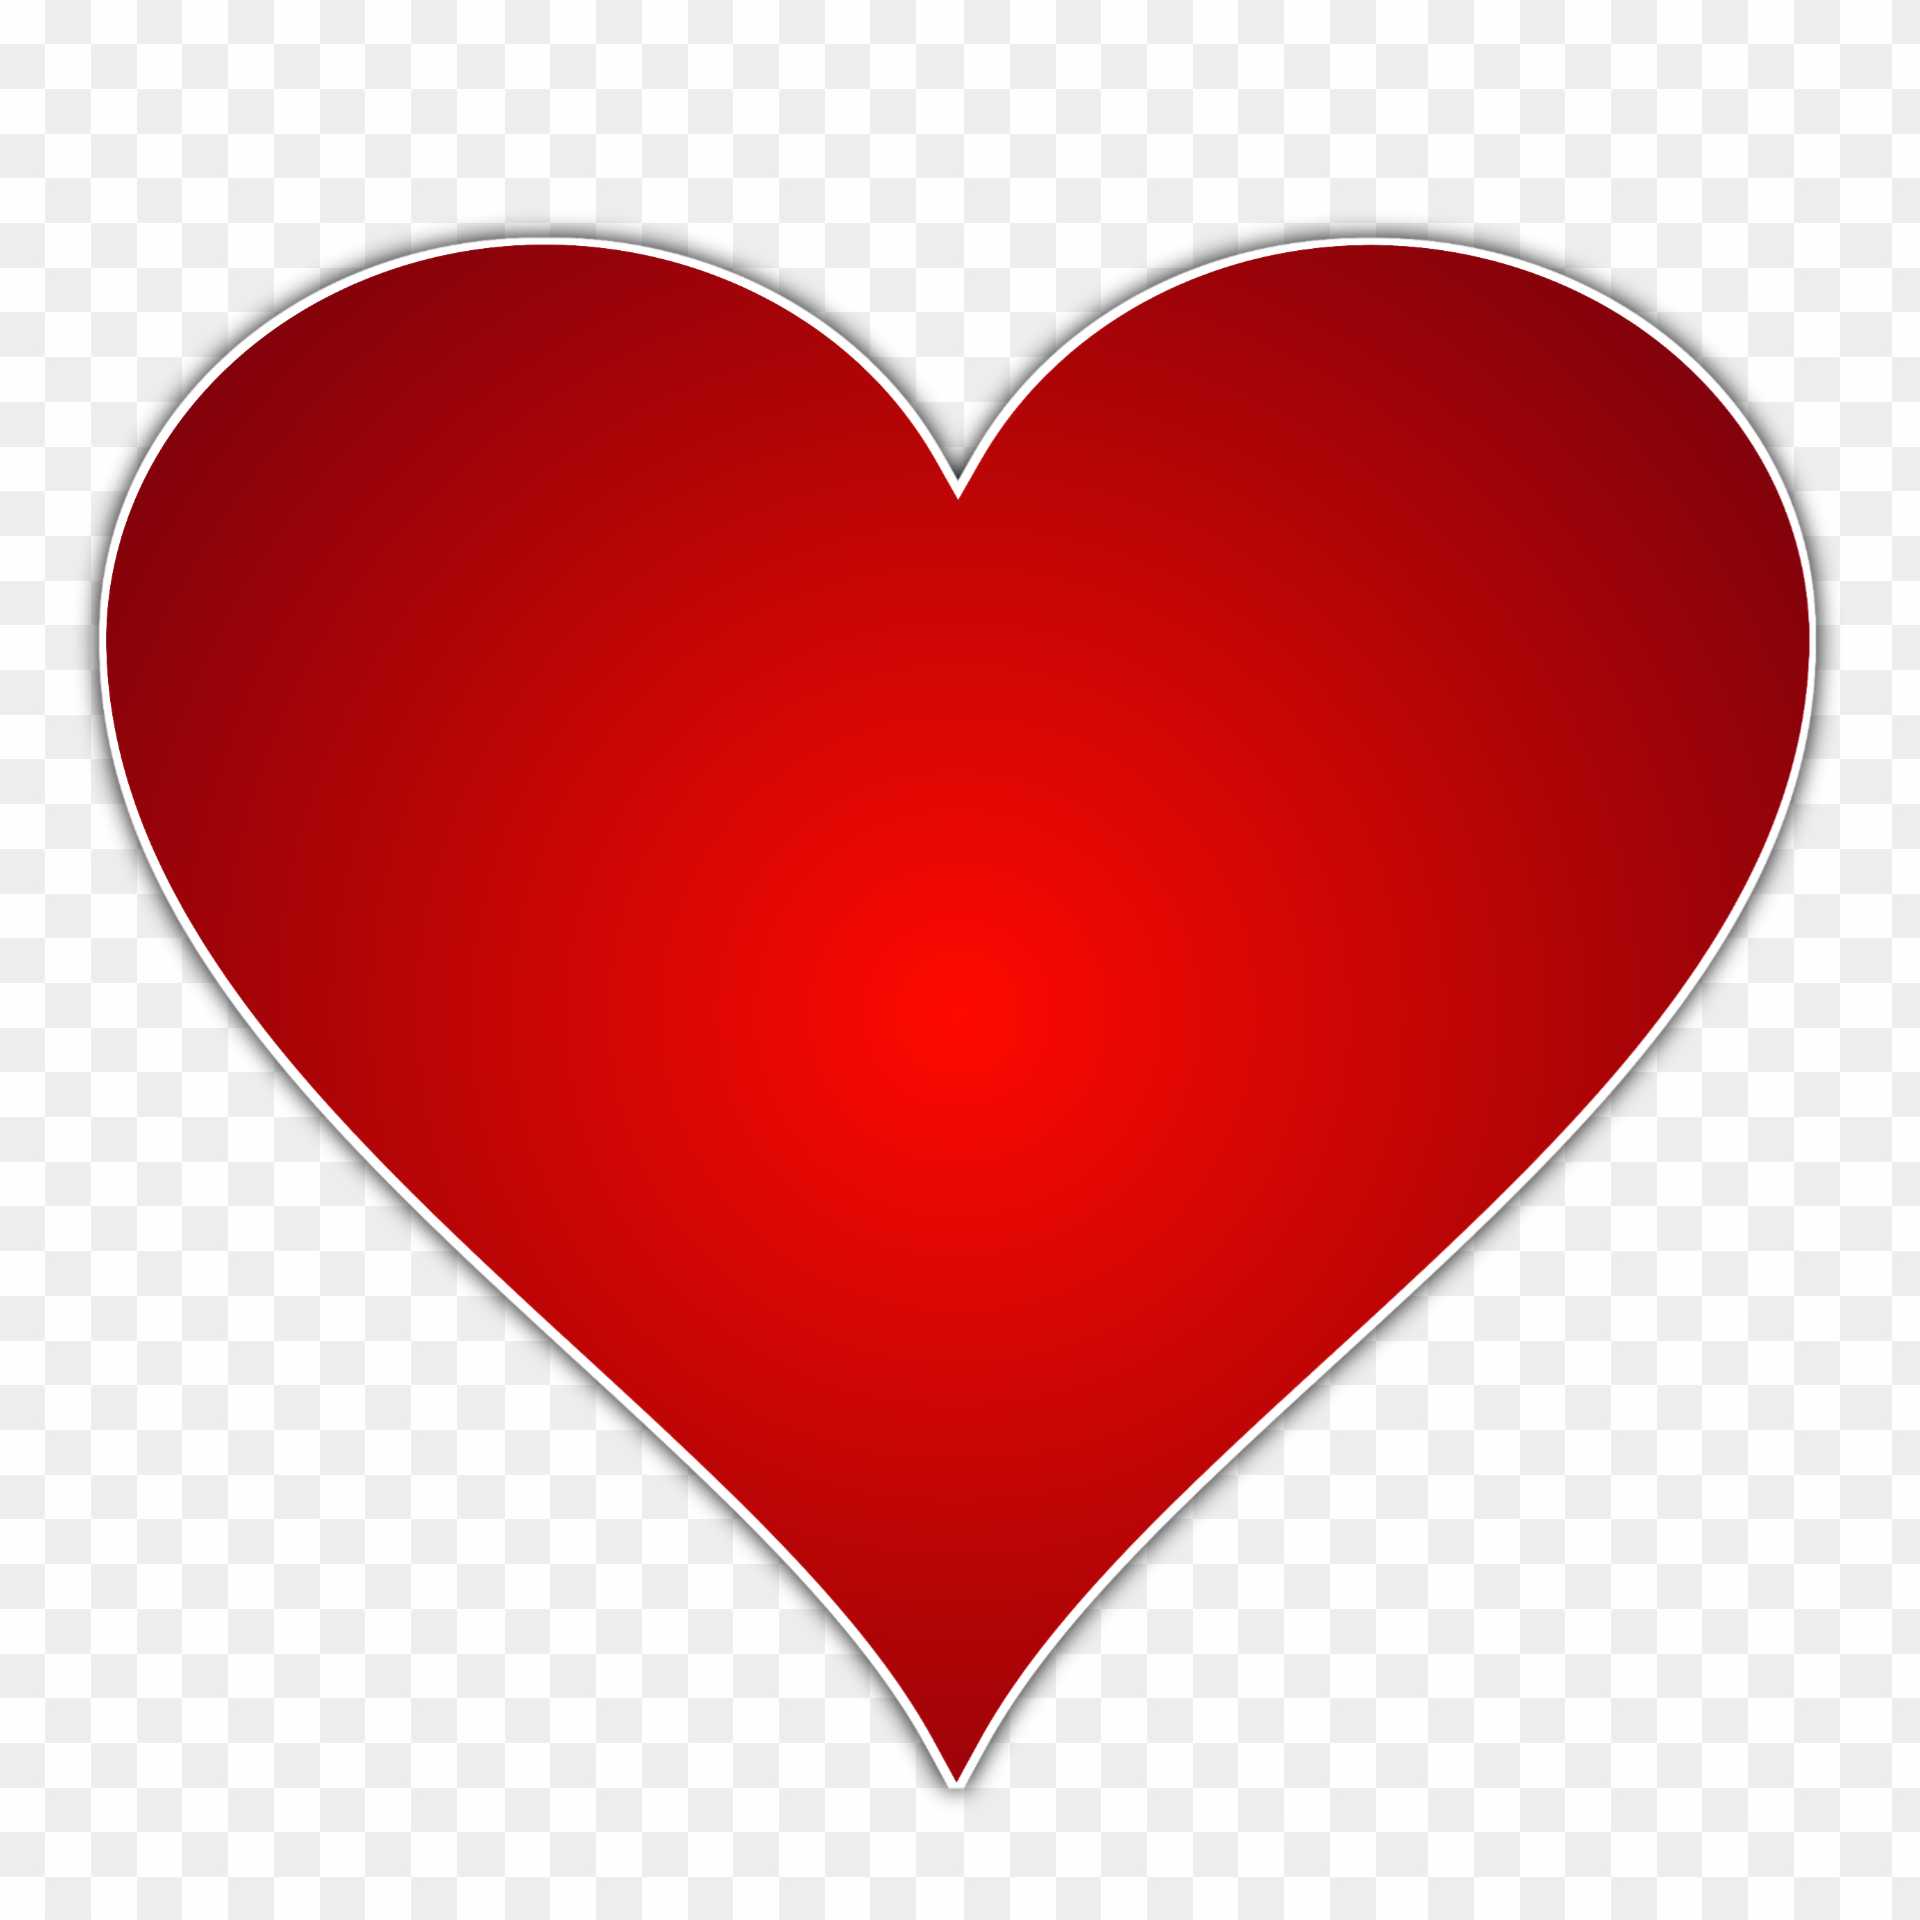 Trái tim đỏ luôn là biểu tượng của tình yêu và sự yêu thương. Hãy xem ngay hình ảnh trái tim đỏ png này để tăng cường những cảm xúc yêu thương và lãng mạn trong bạn. Cho dù bạn có muốn trang trí trong nhà hoặc sử dụng trong các dự án thiết kế, đây là một sự lựa chọn tuyệt vời!